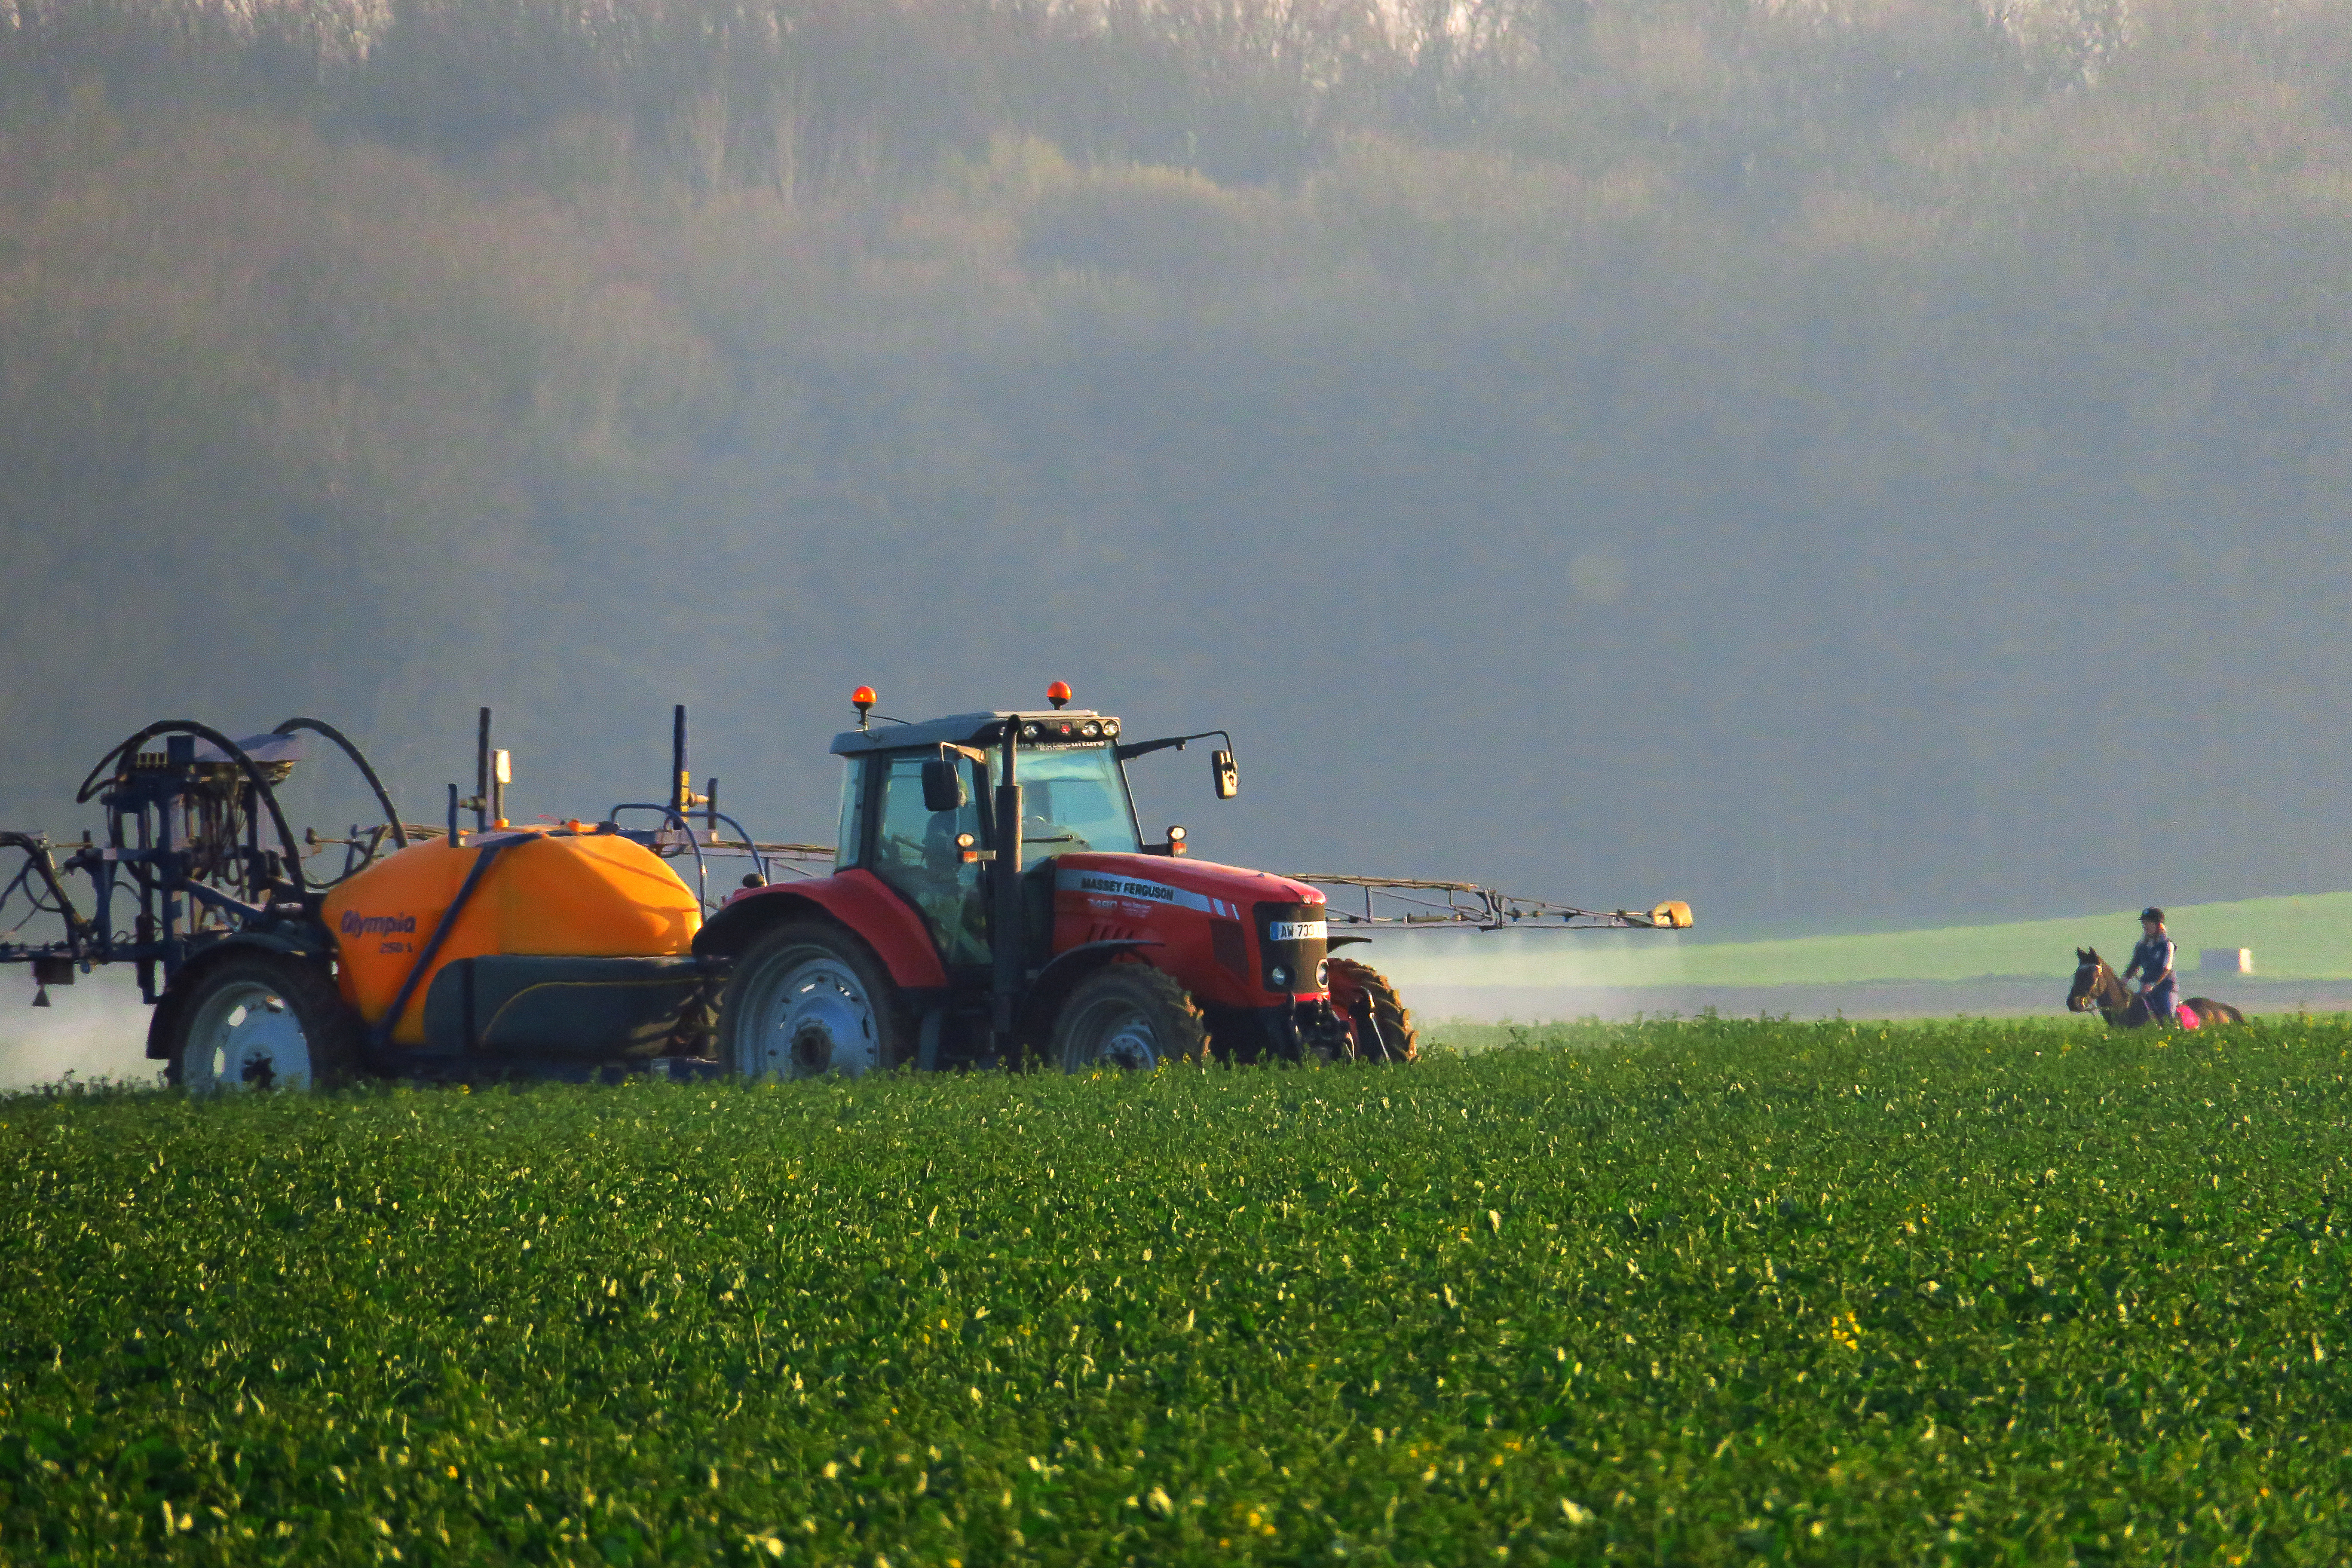 Renouveler les générations d'agriculteurs, un défi pour nourrir l'Europe